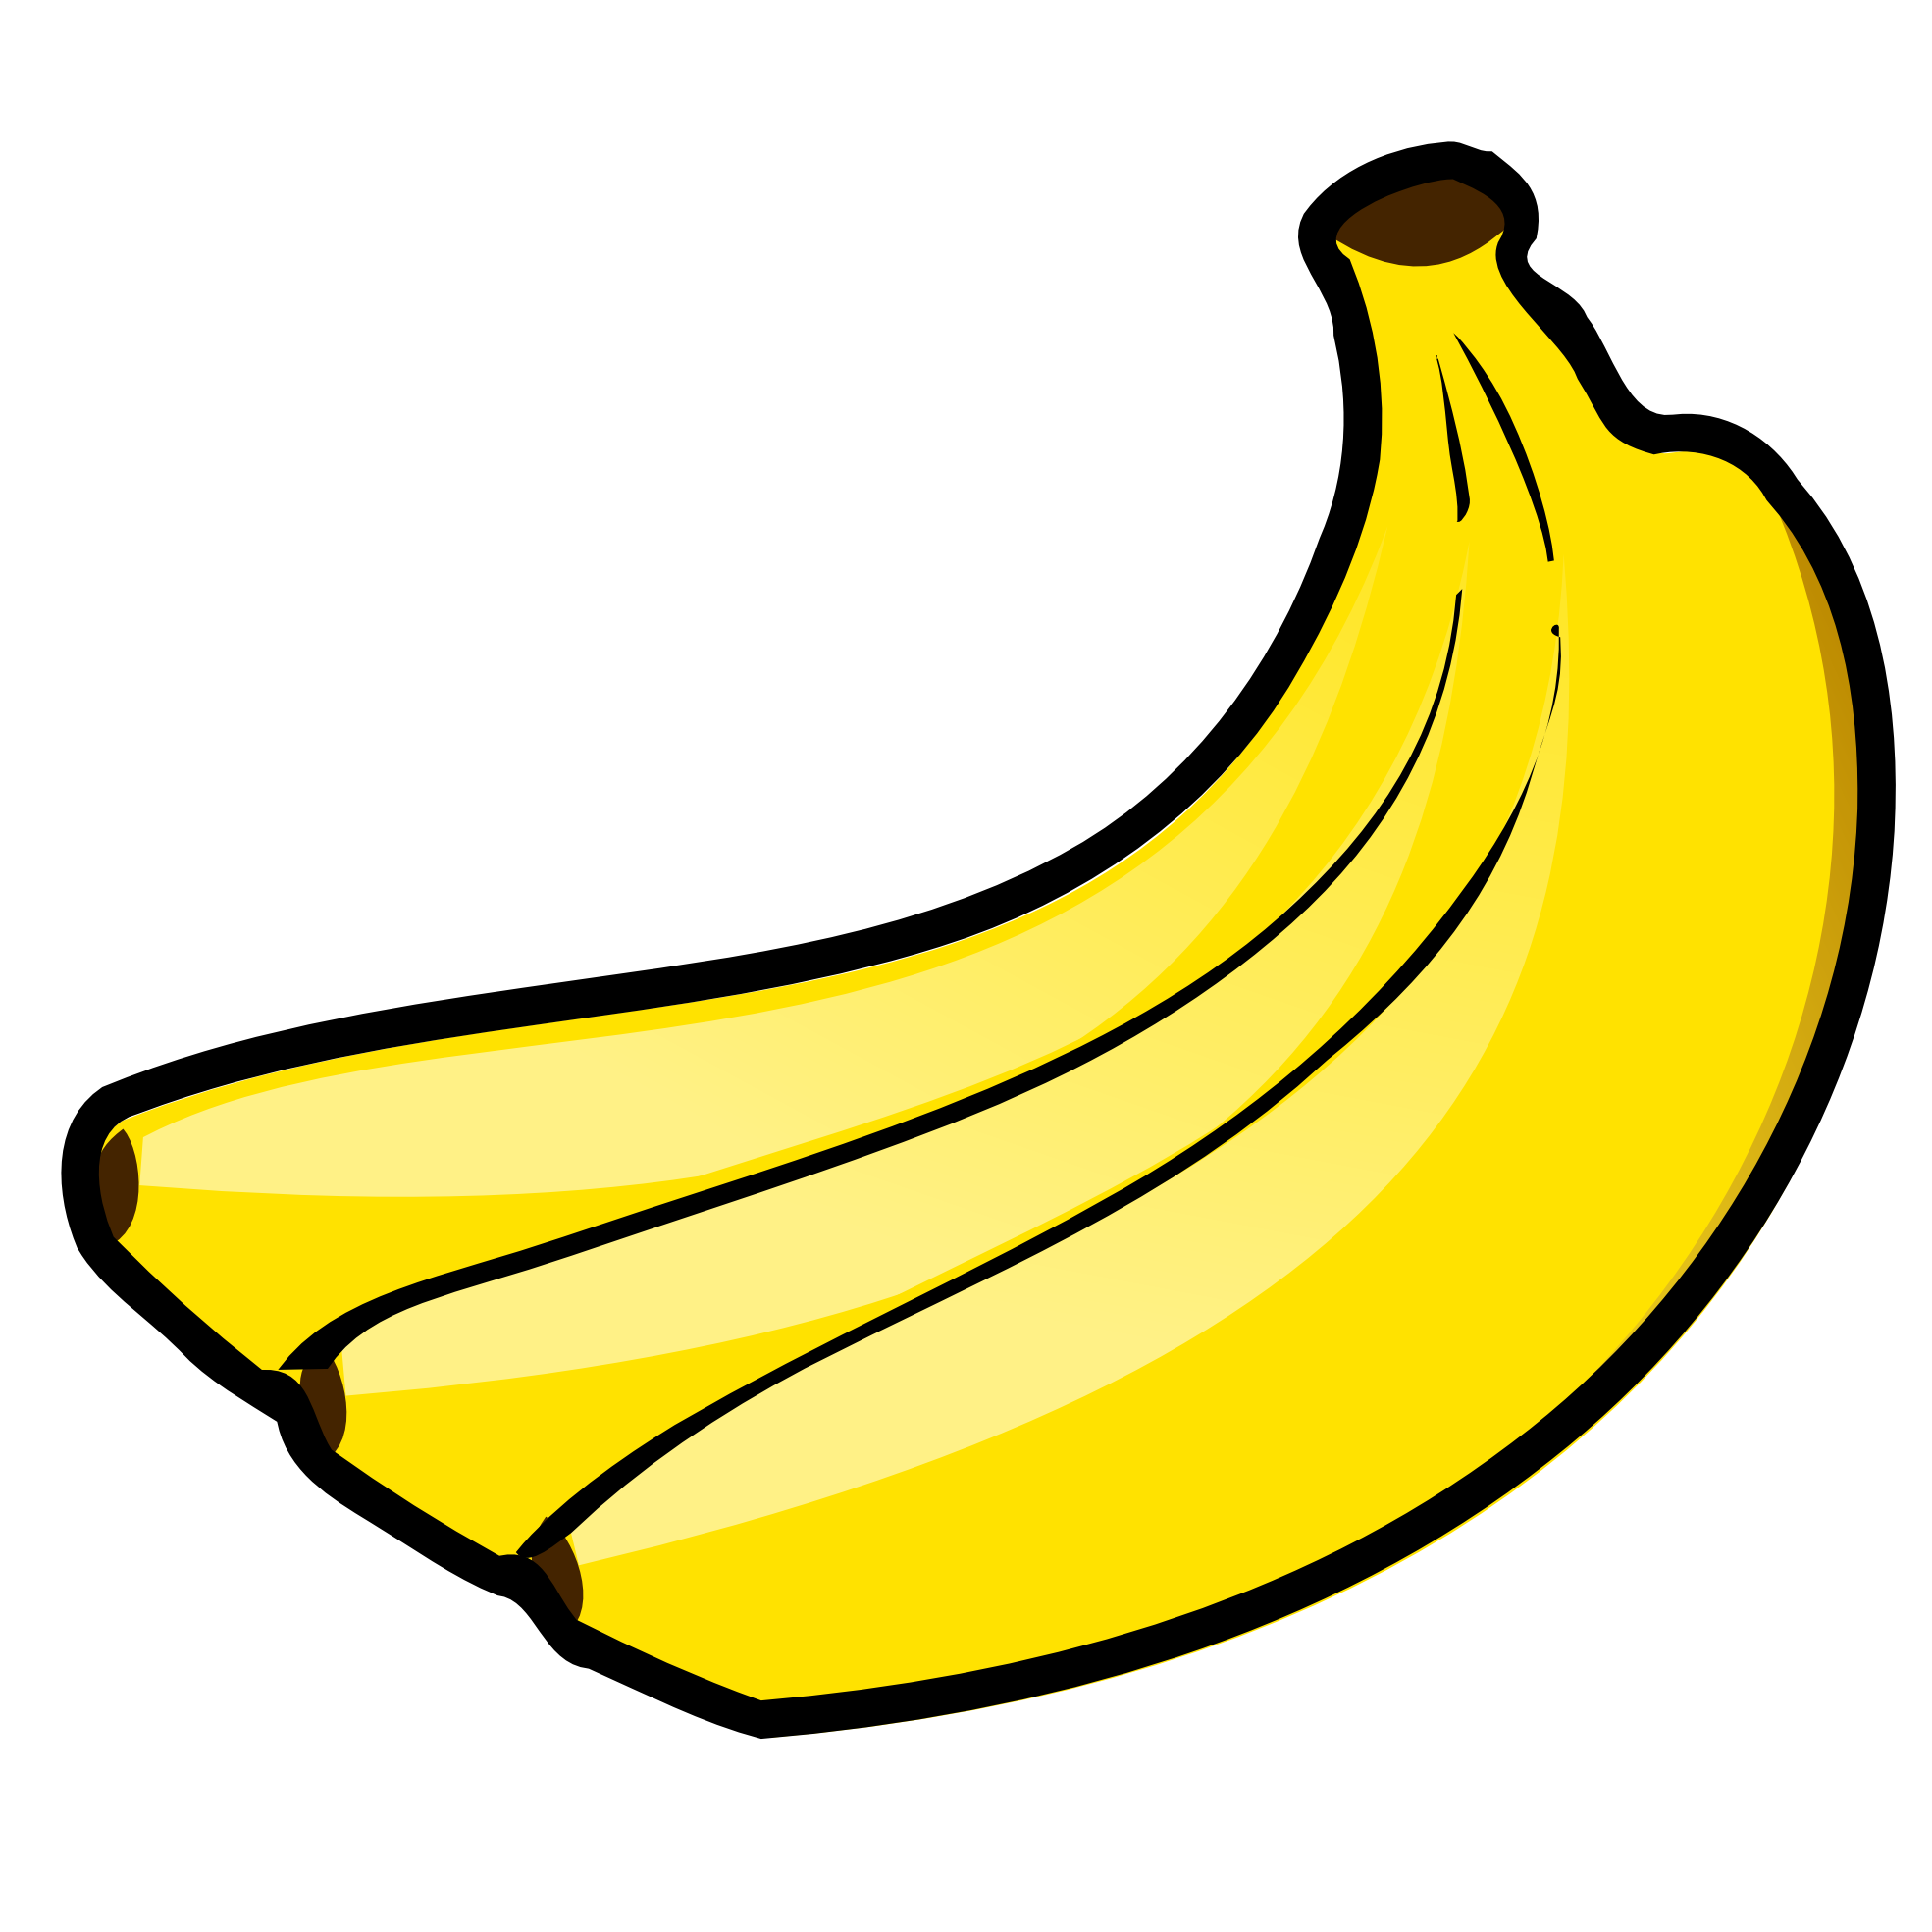 banana # 82064